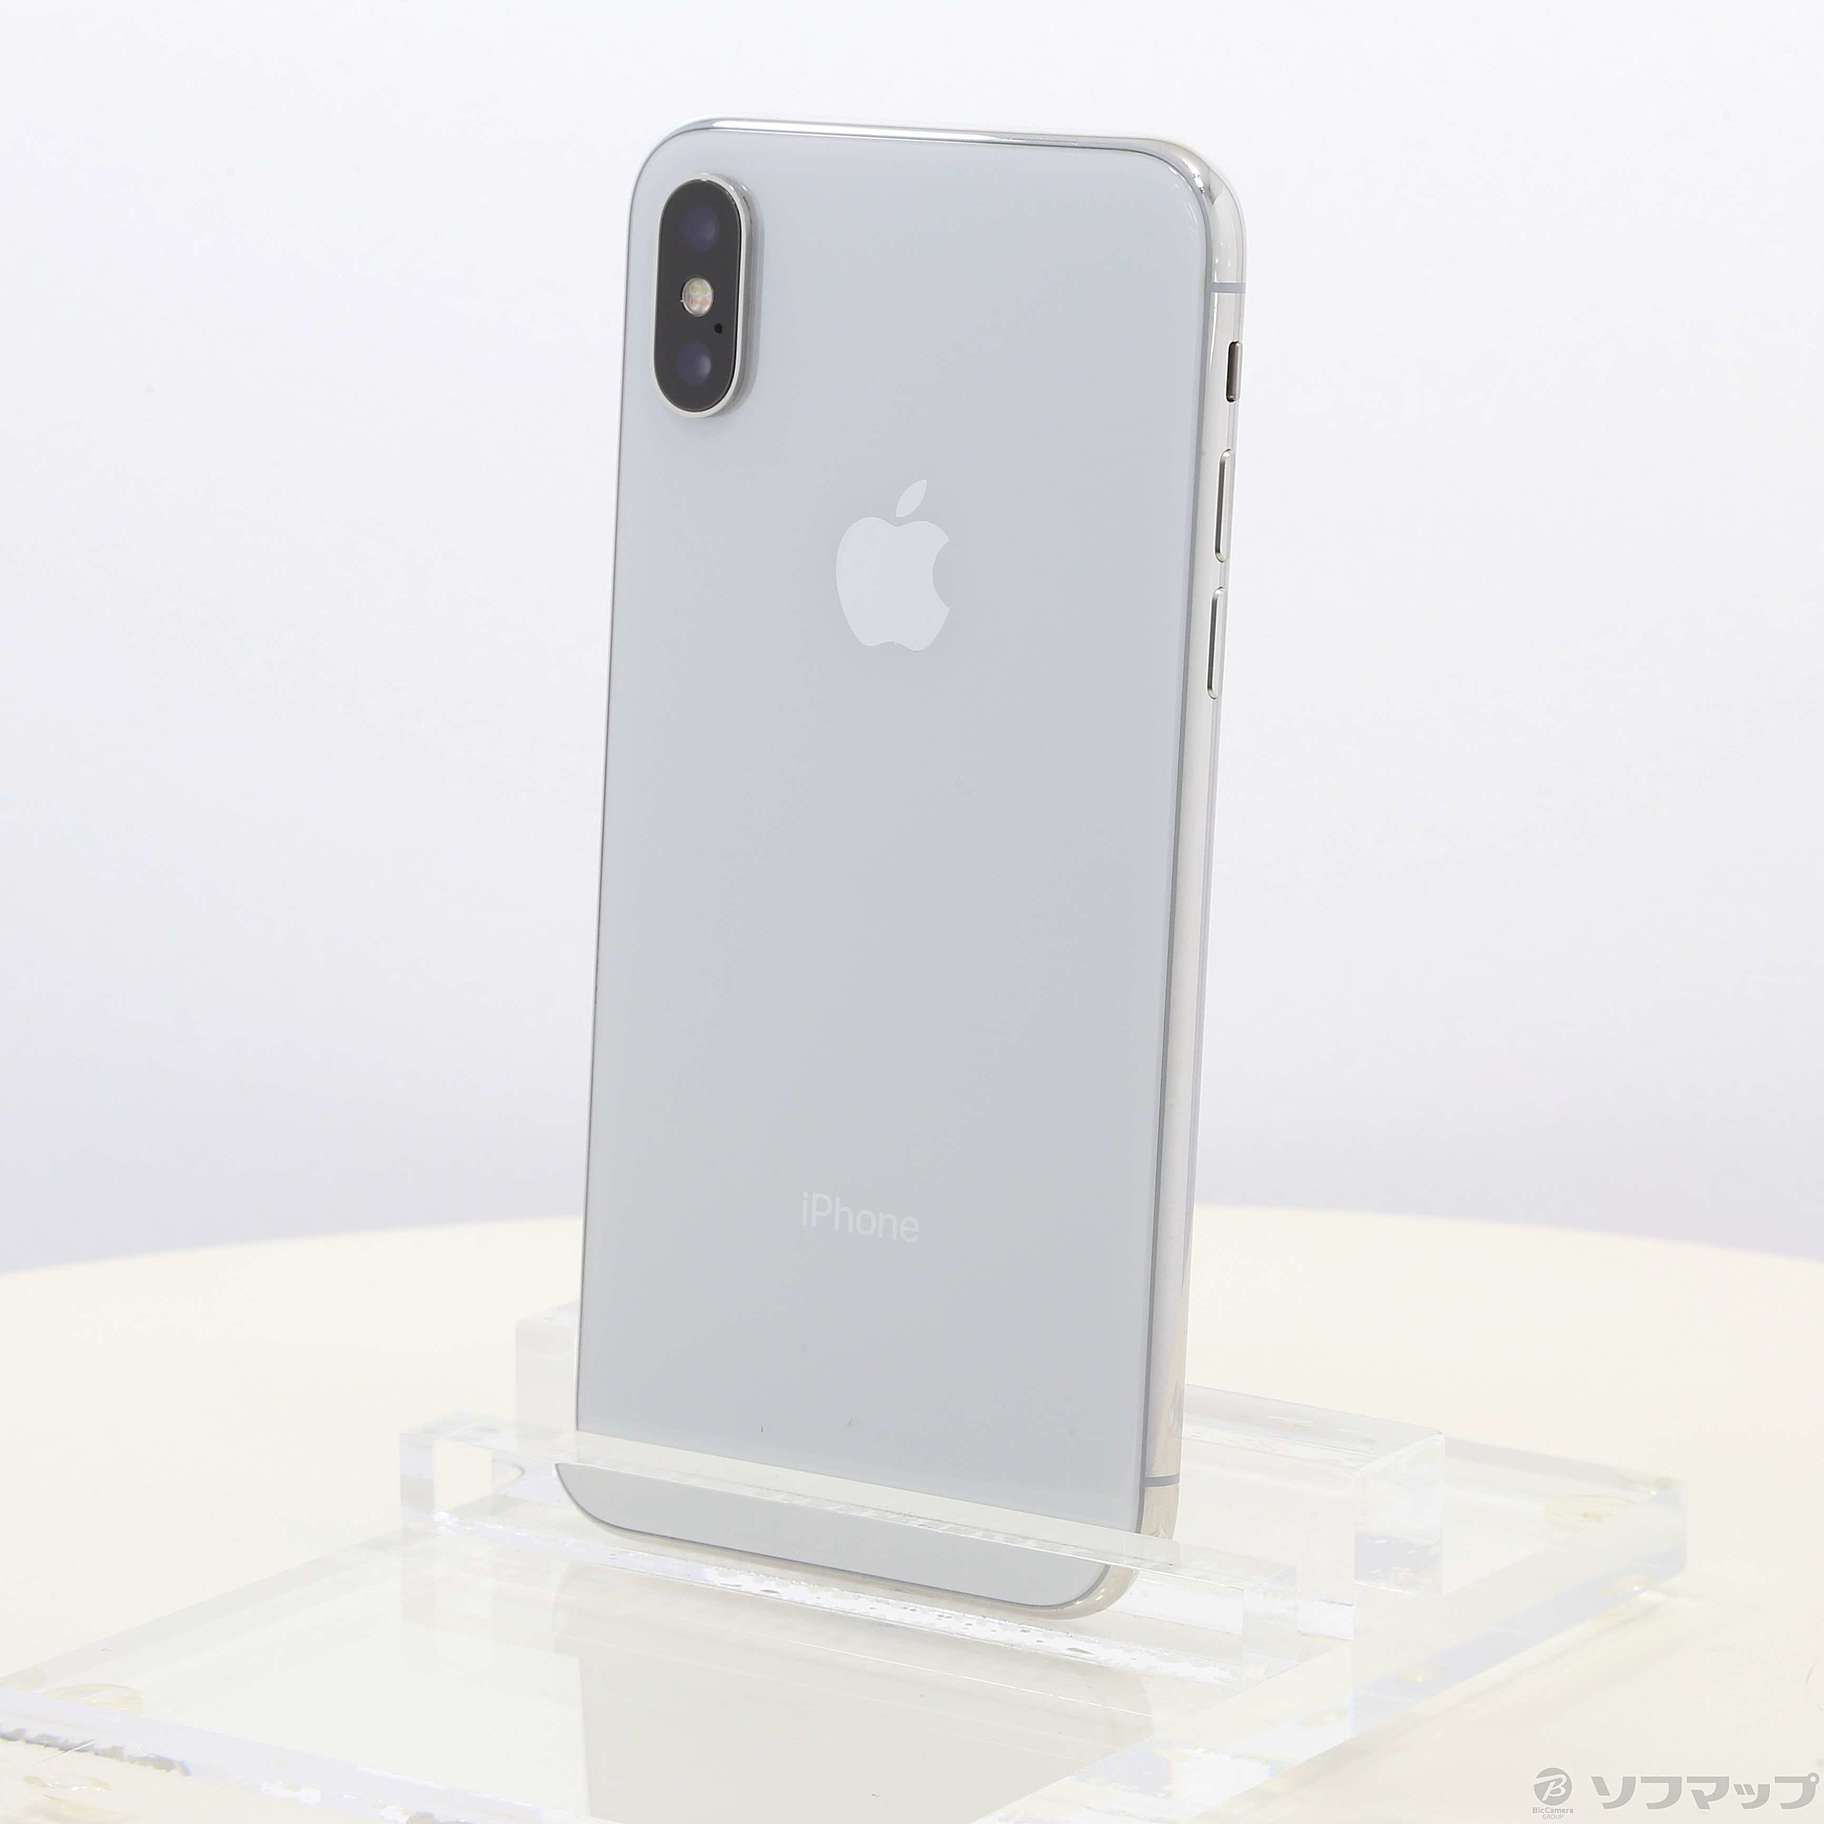 日本全国-iPhone - iPhoneX 64GB SIMフリー - lab.comfamiliar.com